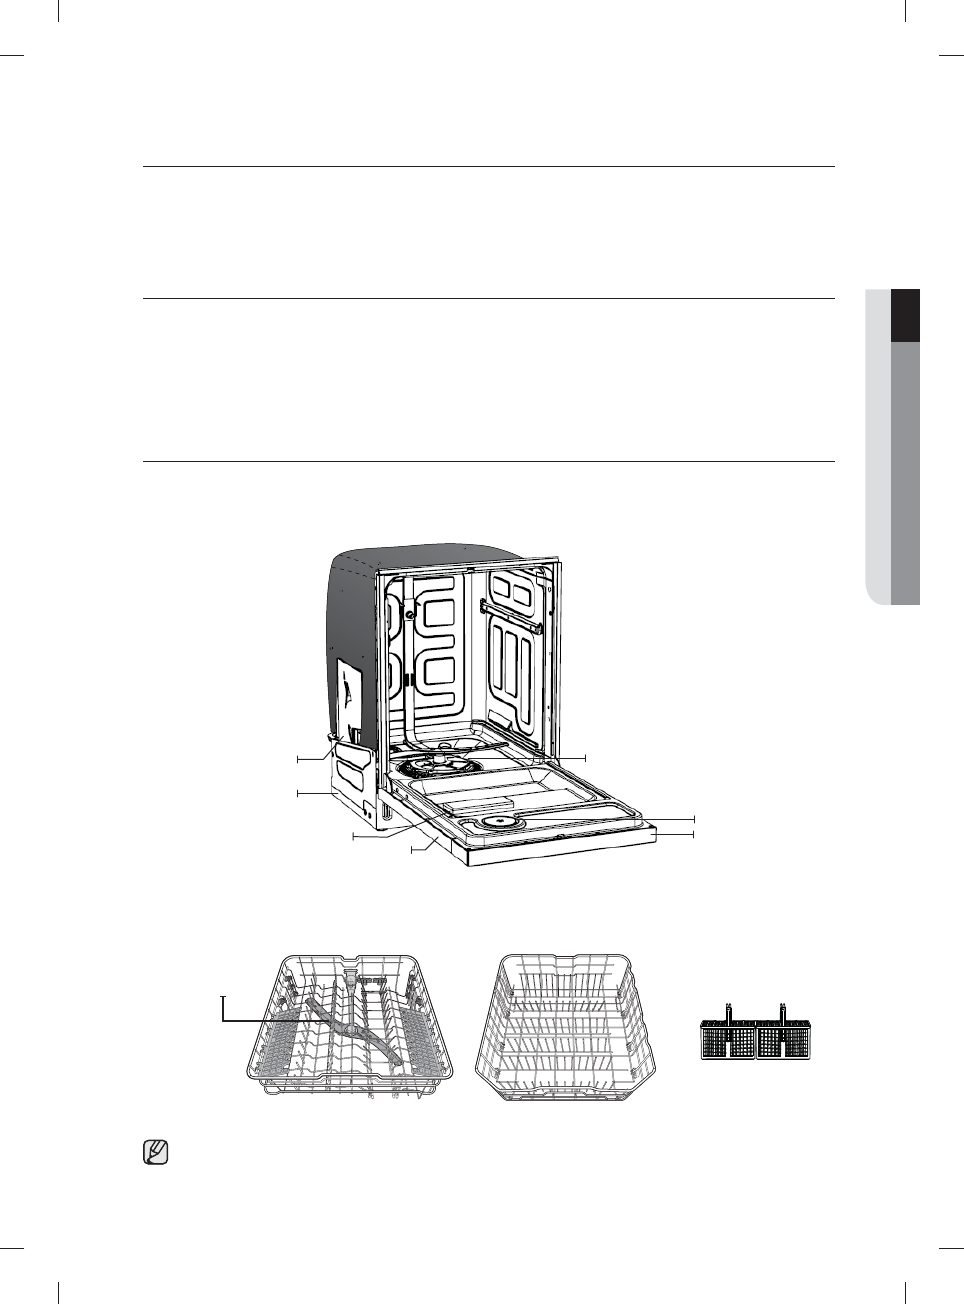 samsung dishwasher model dw7933lrabb